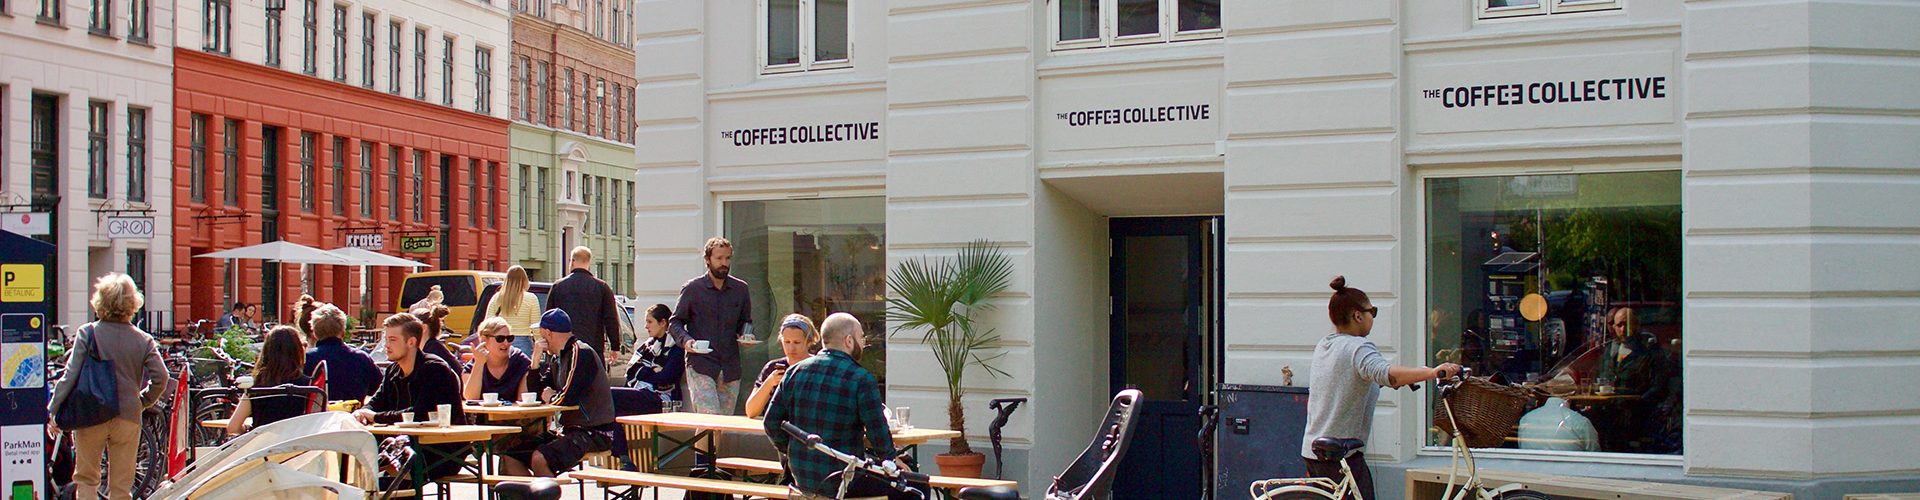 Coffee Collective Copenhagen Denmark Brian W Jones